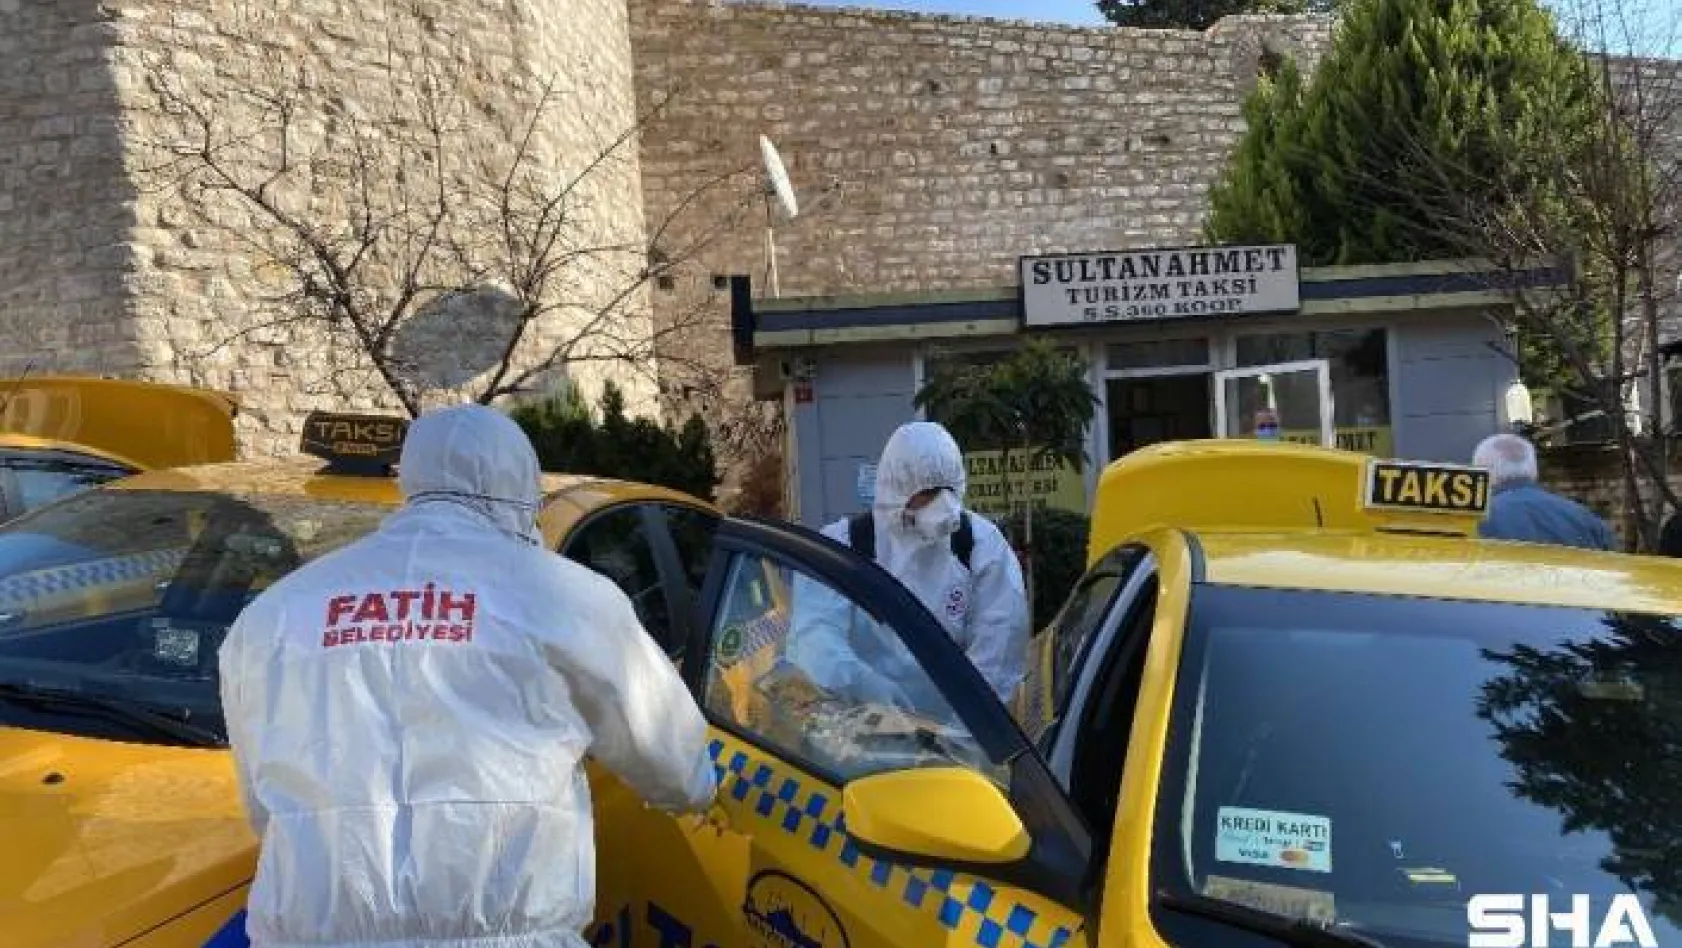 Fatih'te taksi ve taksi durakları korona virüse karşı dezenfekte ediliyor